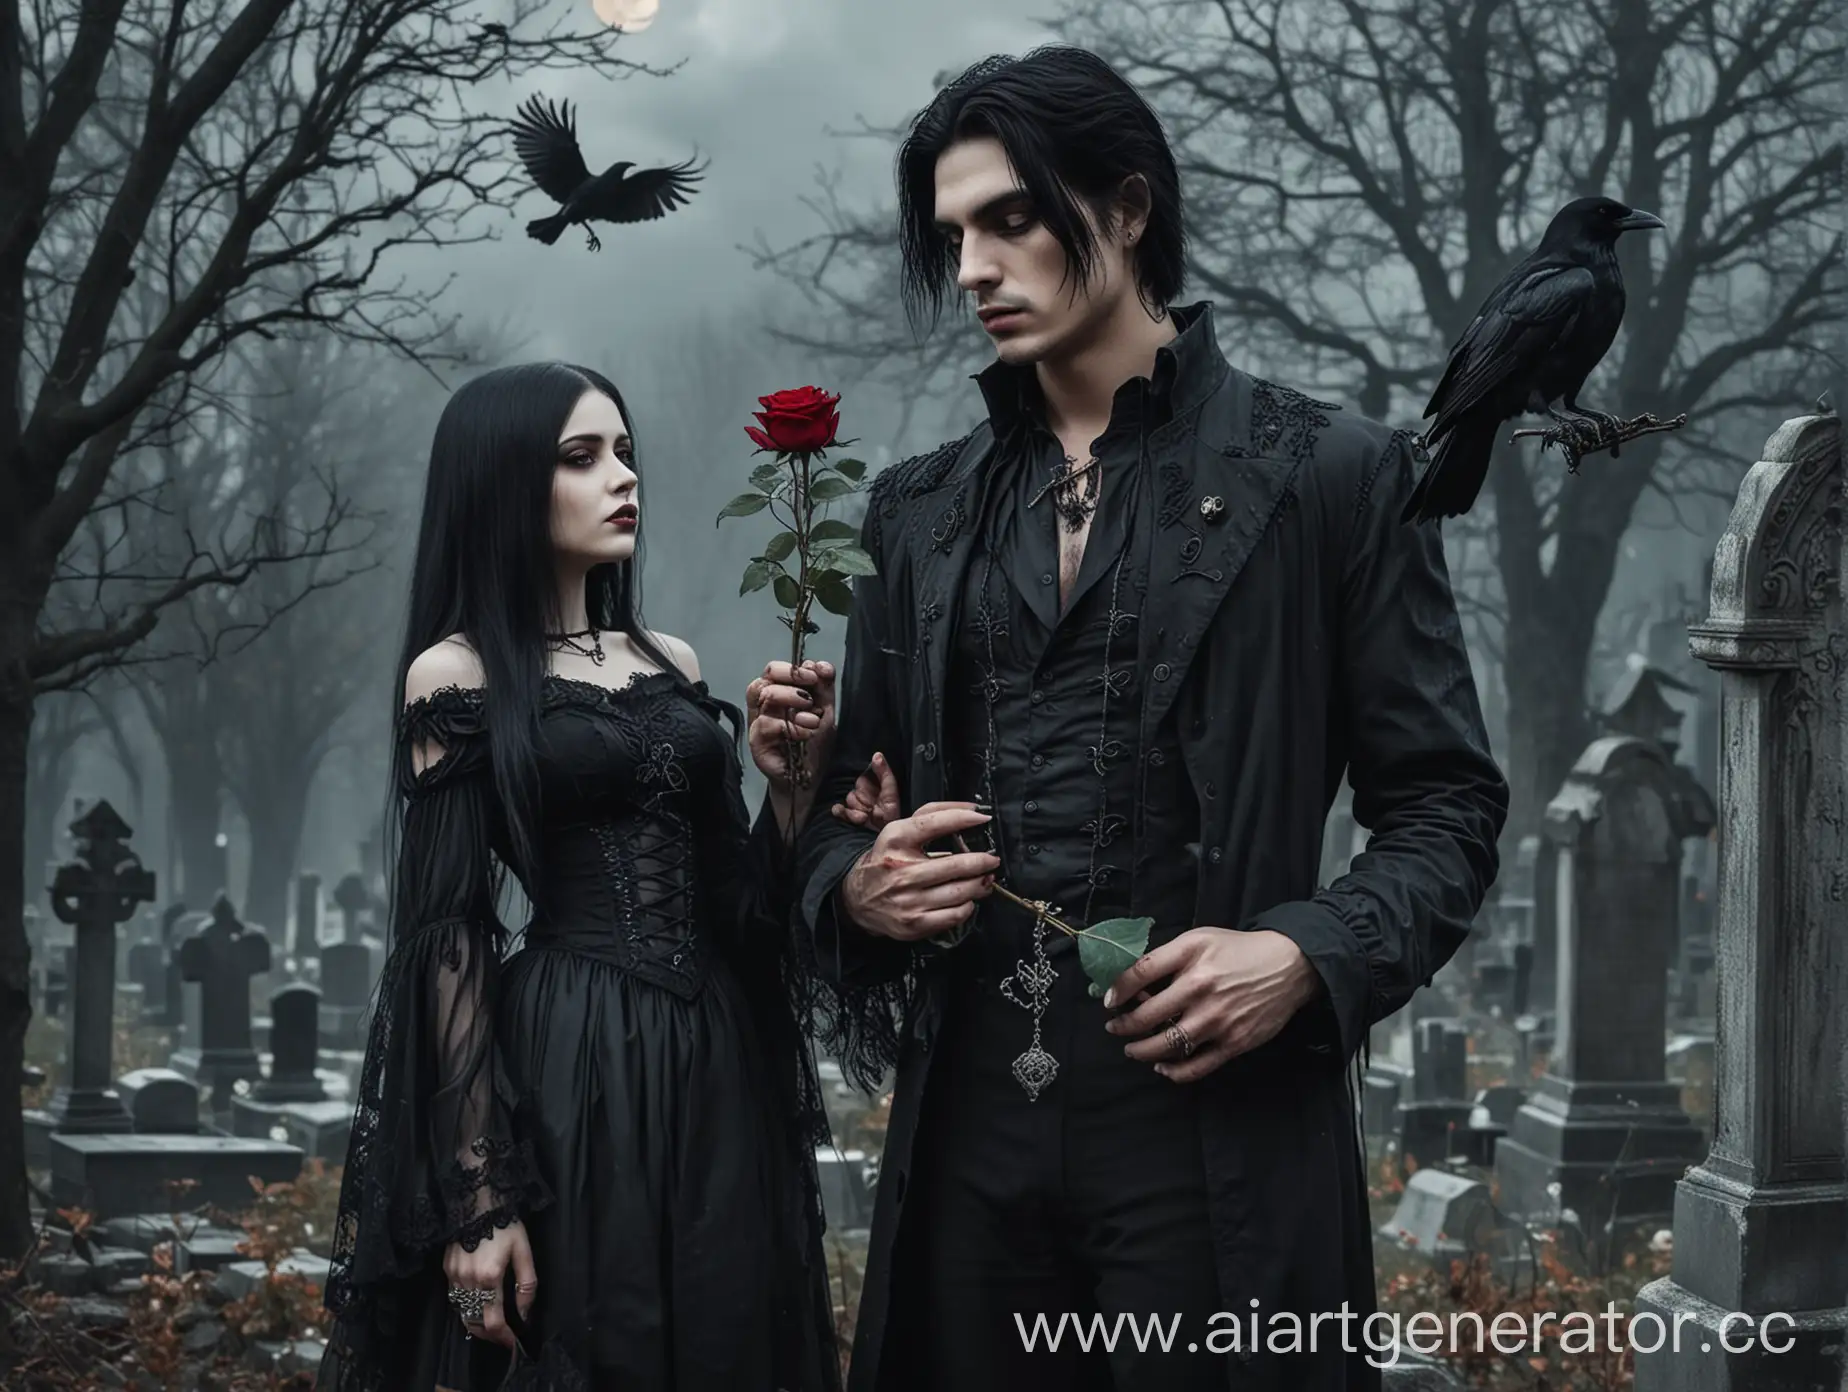 мужчина с черными волосами  держит розу в руке. рядом женщина девушка готика  .кладбище вороны луна. готика
